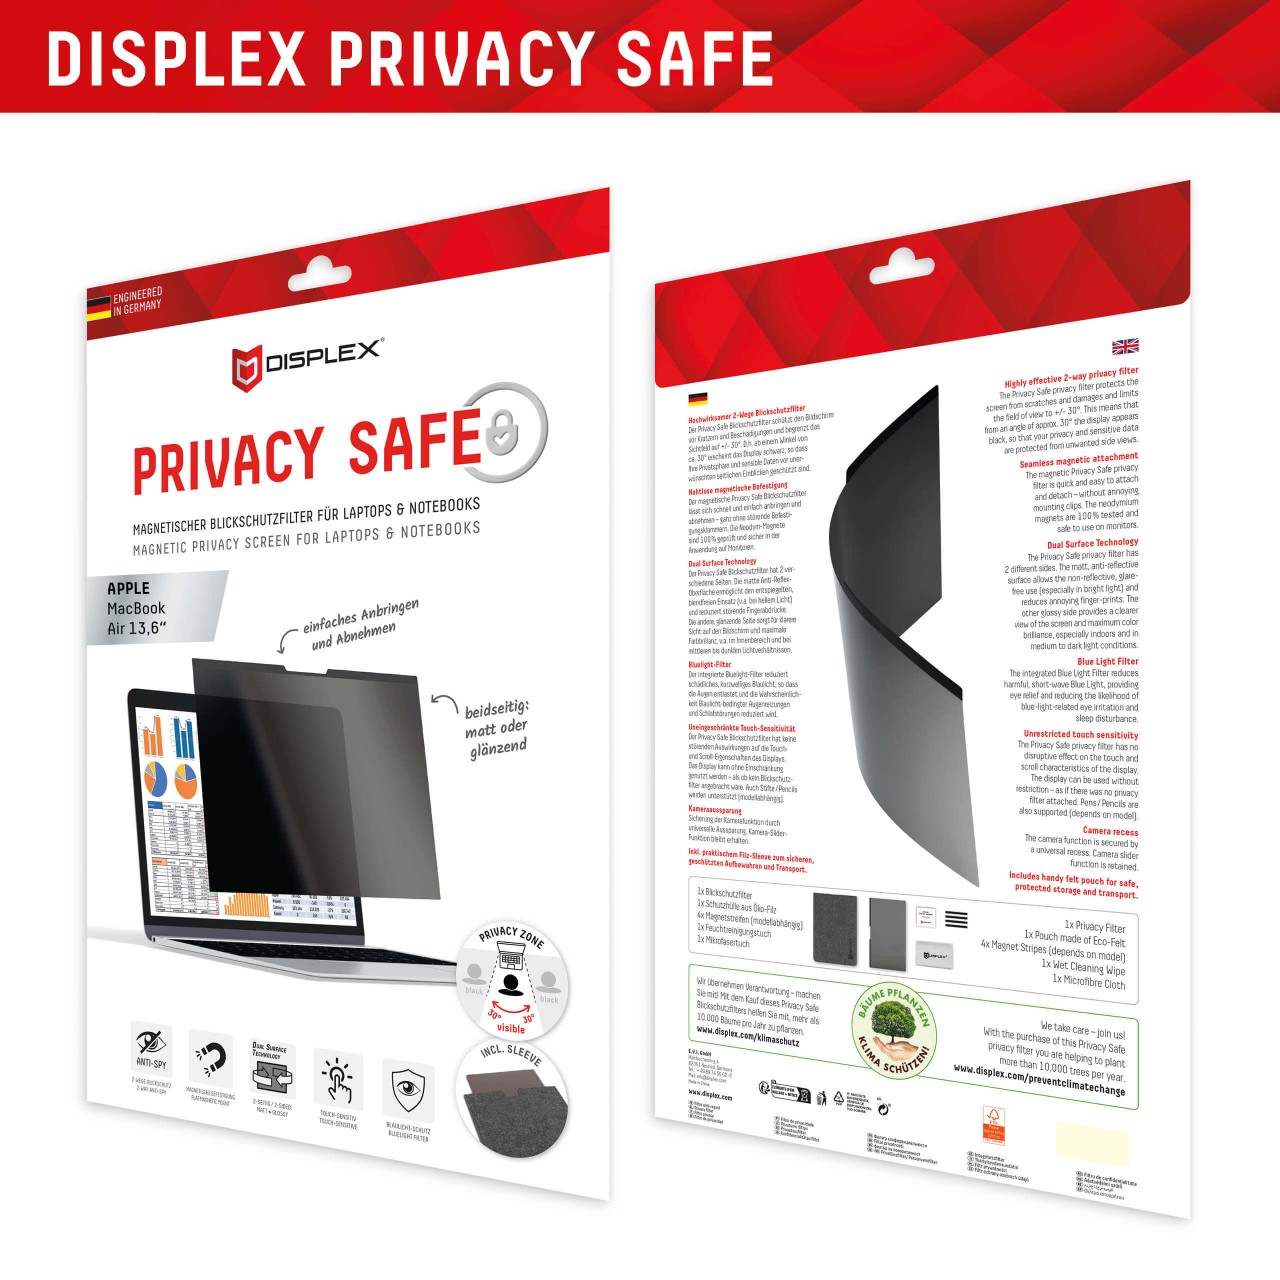 PRIVACY SAFE Magnetischer 2-Wege Blickschutzfilter für MacBook Air 13,6‘‘